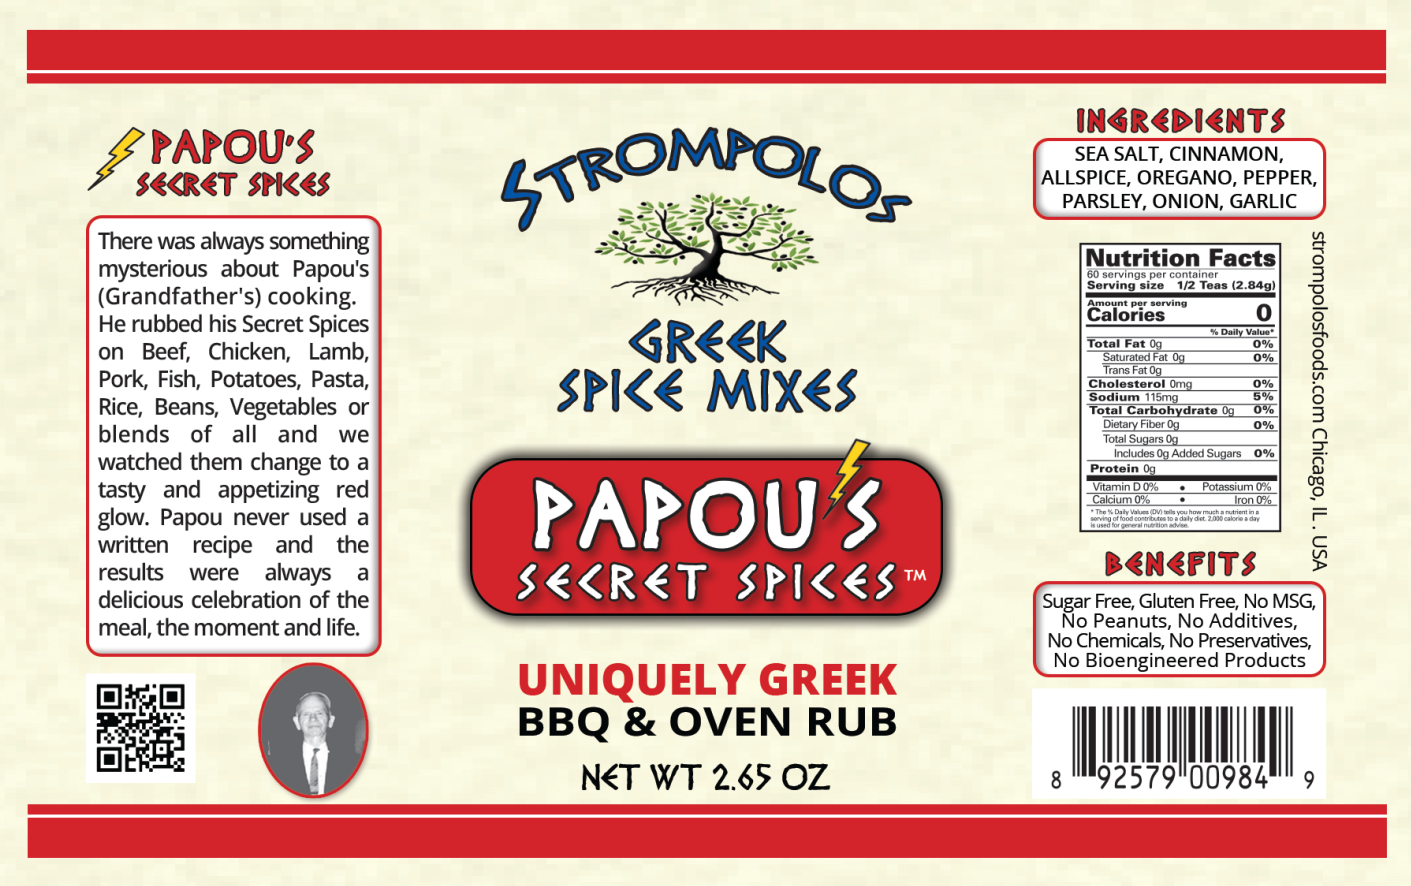 Papou's Secret Spices